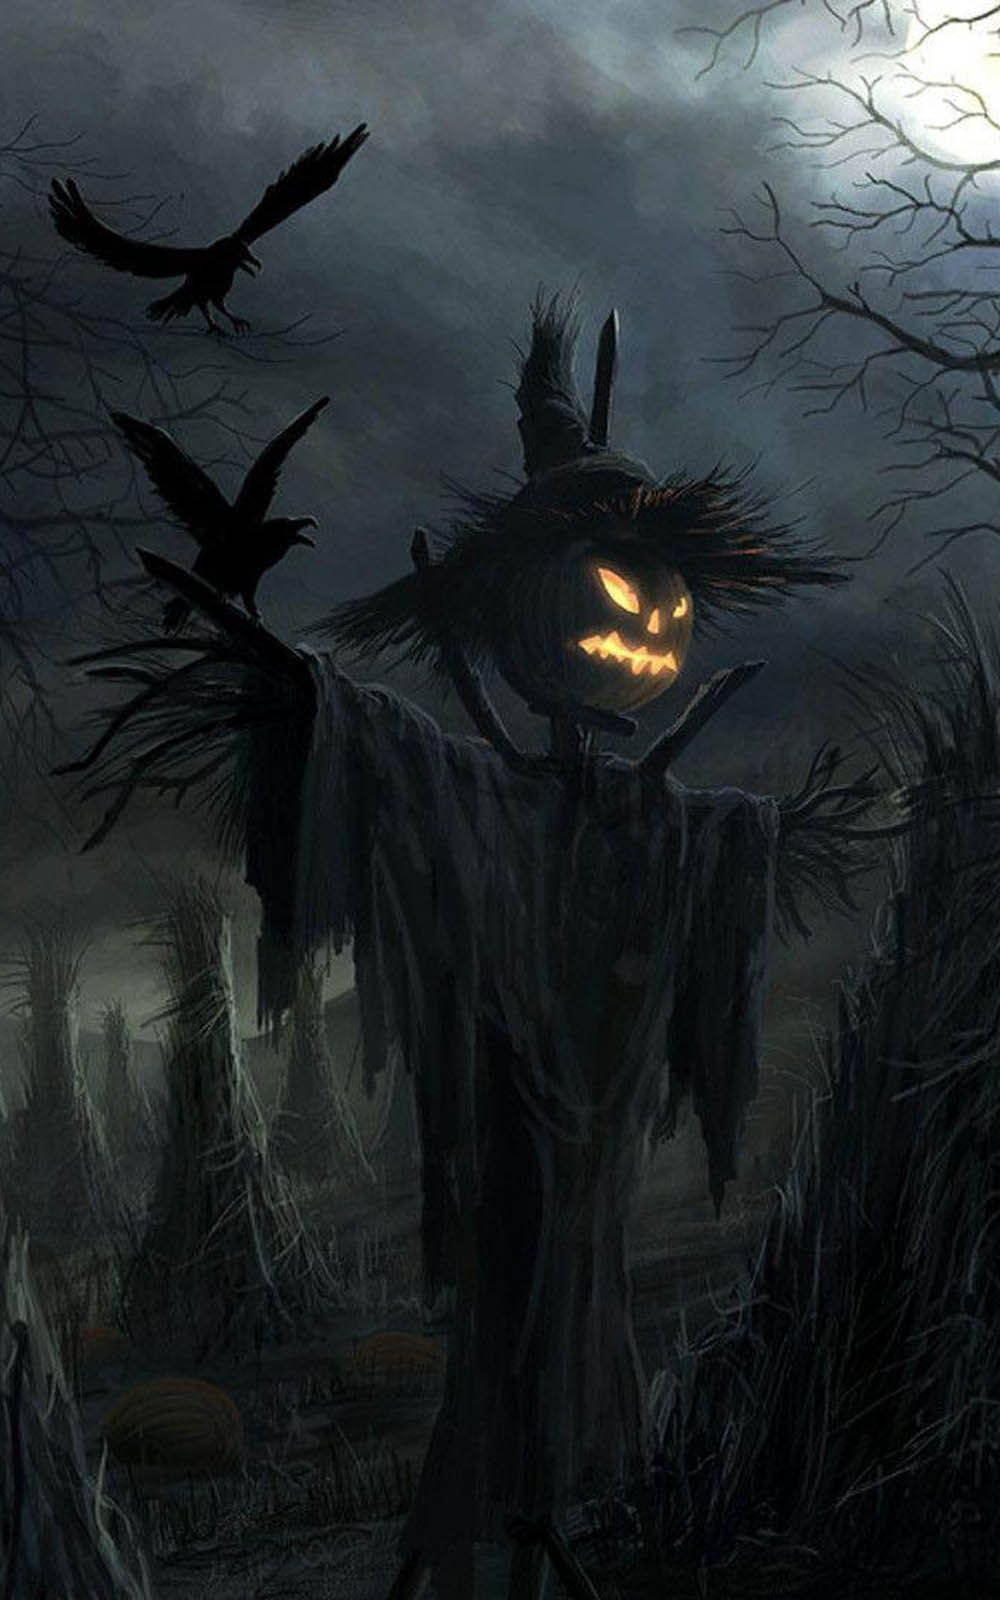 Erschreckedeine Freunde An Halloween Mit Diesem Gruseligen Halloween-iphone-hintergrund! Wallpaper